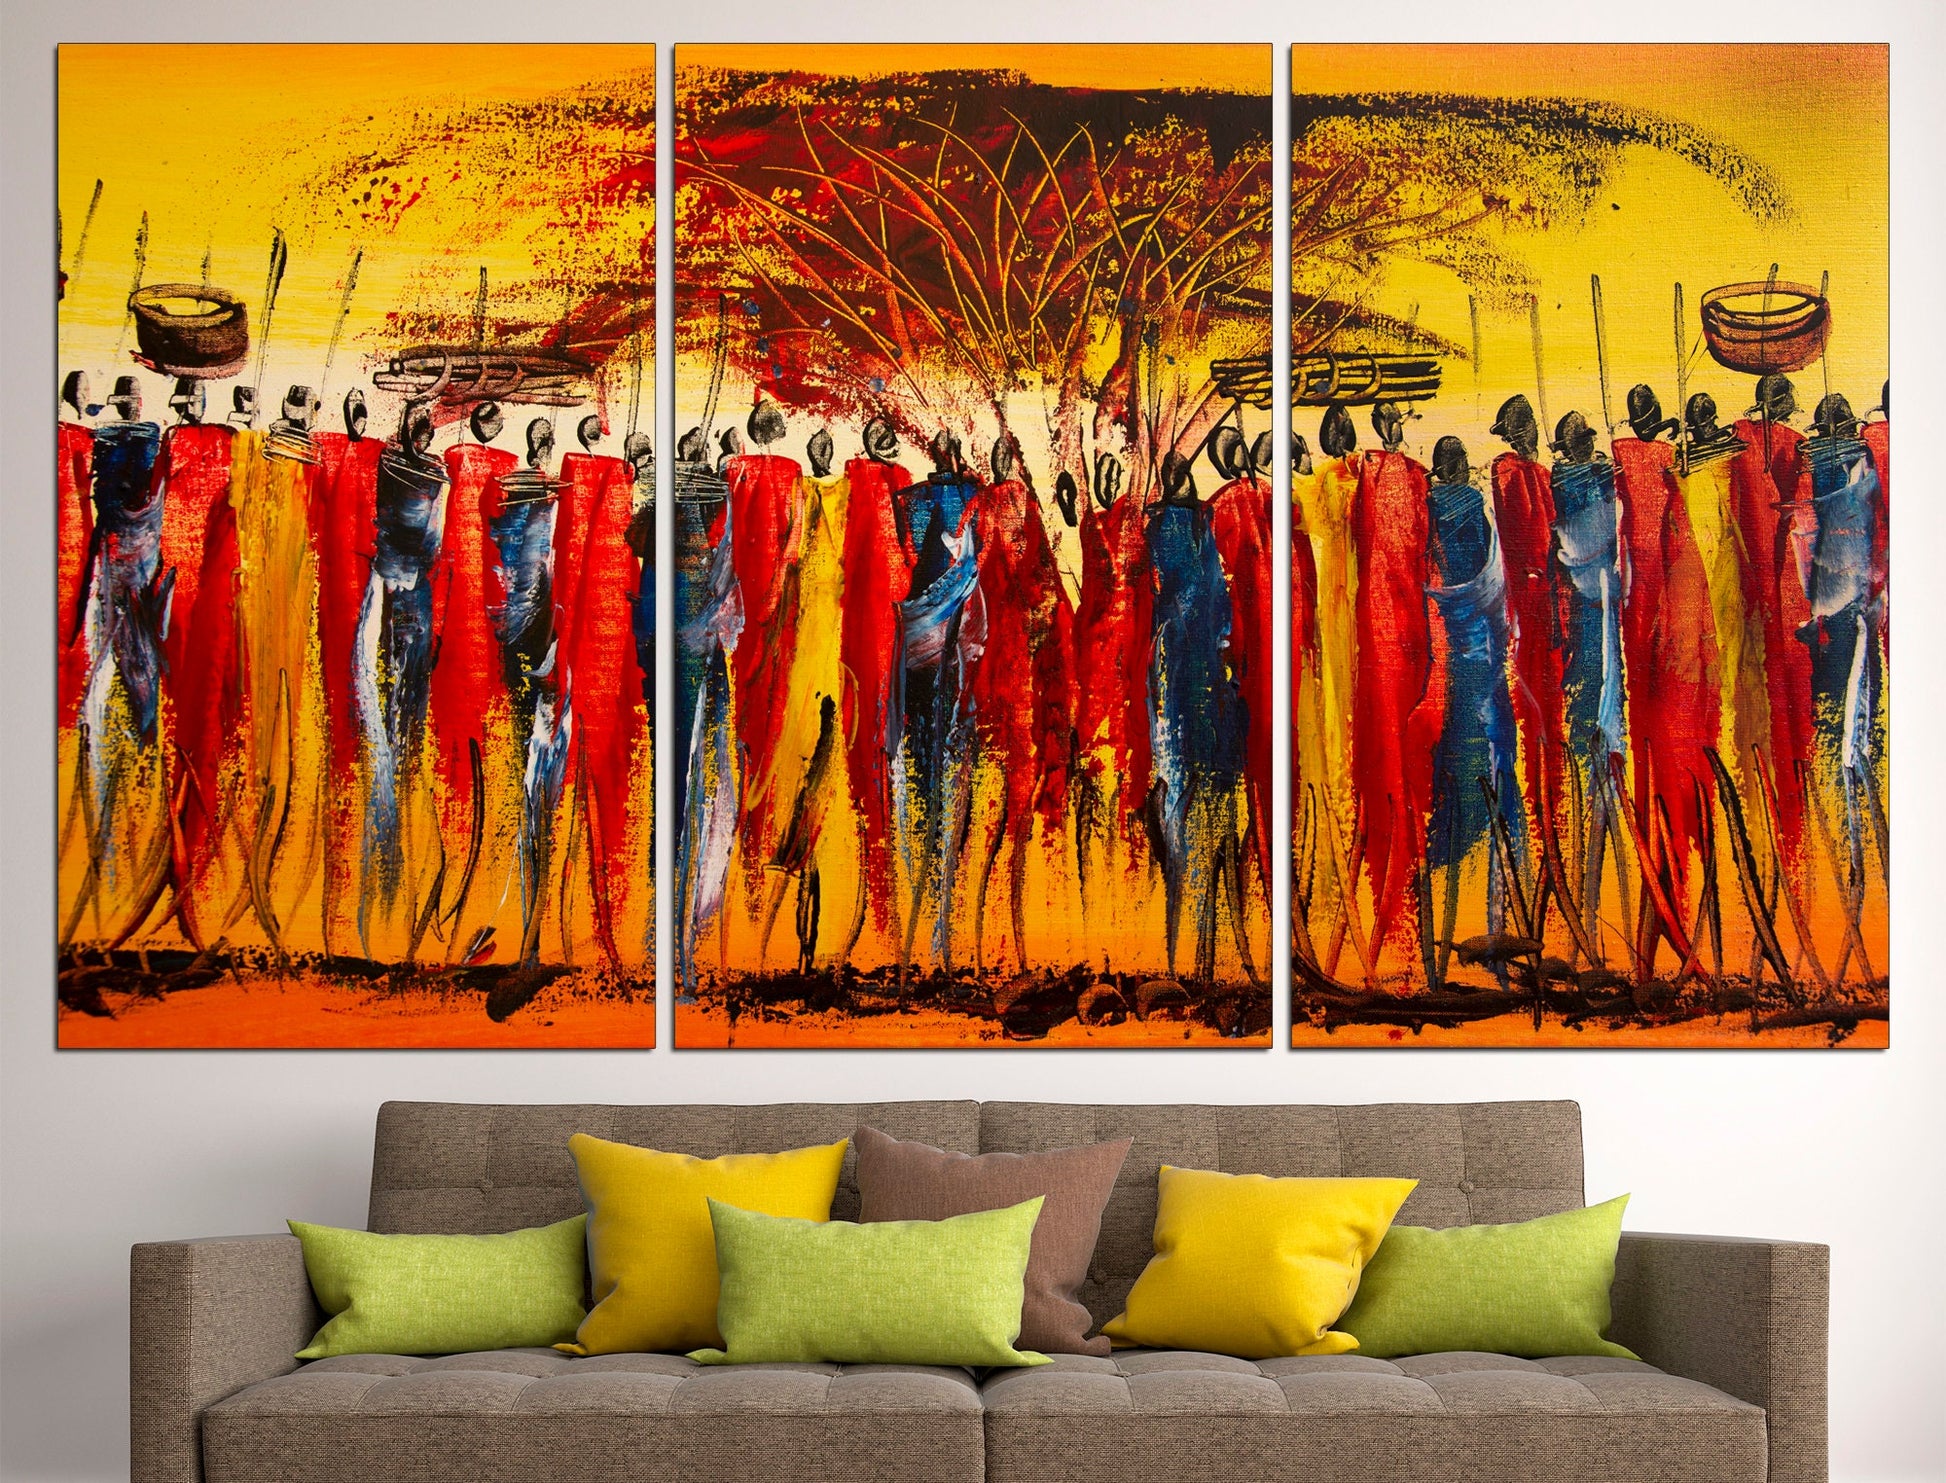 Abstract african art African wall decor Colorful wall art, African home decor African american art Modern wall art